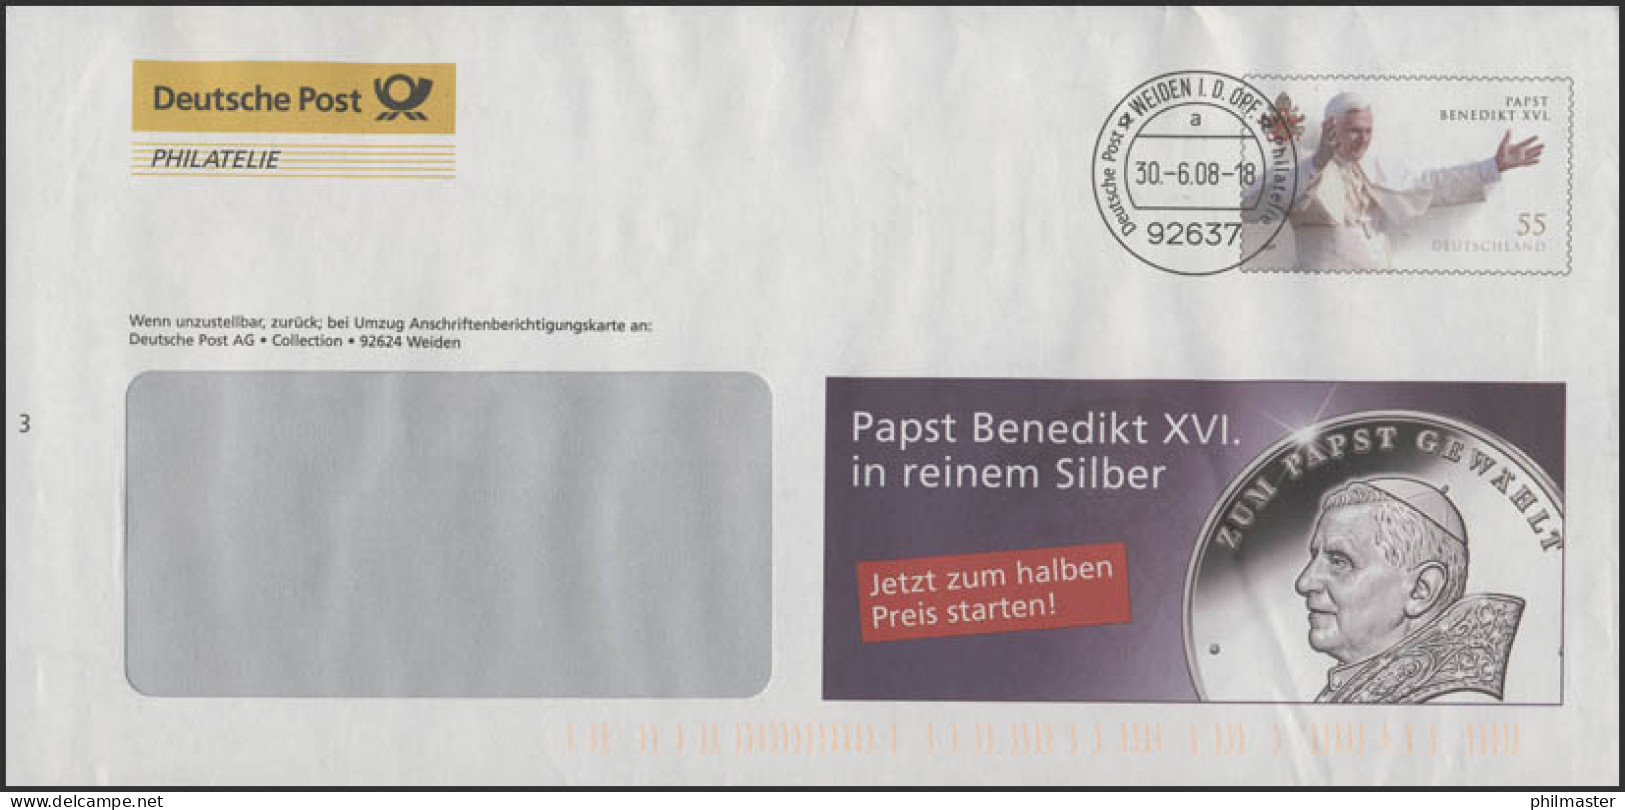 Plusbrief F332 Papst Bendikt XVI: Werbung Für Papst-Silbermünze, 30.6.08 - Umschläge - Ungebraucht